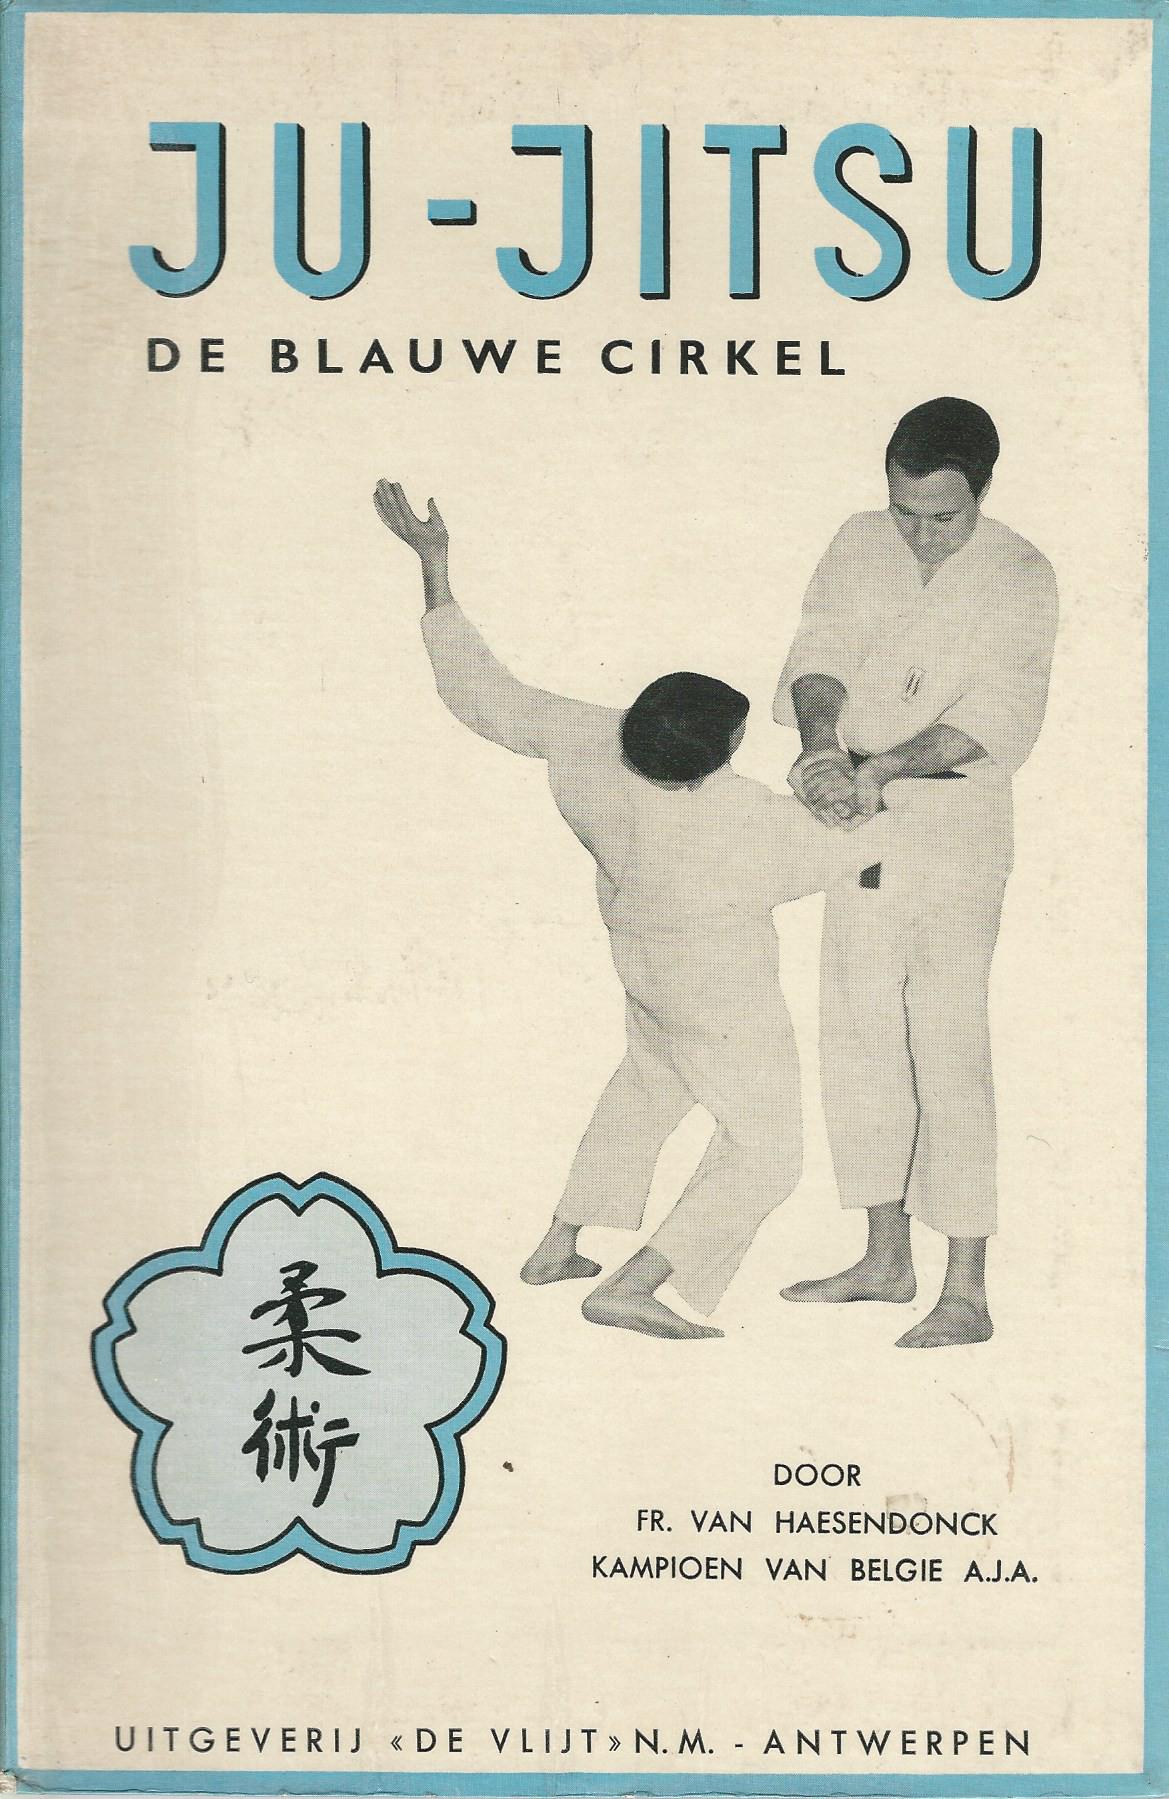 Ju Jitsu Boek Over Vechtsport De Blauwe Cirkel Aikido